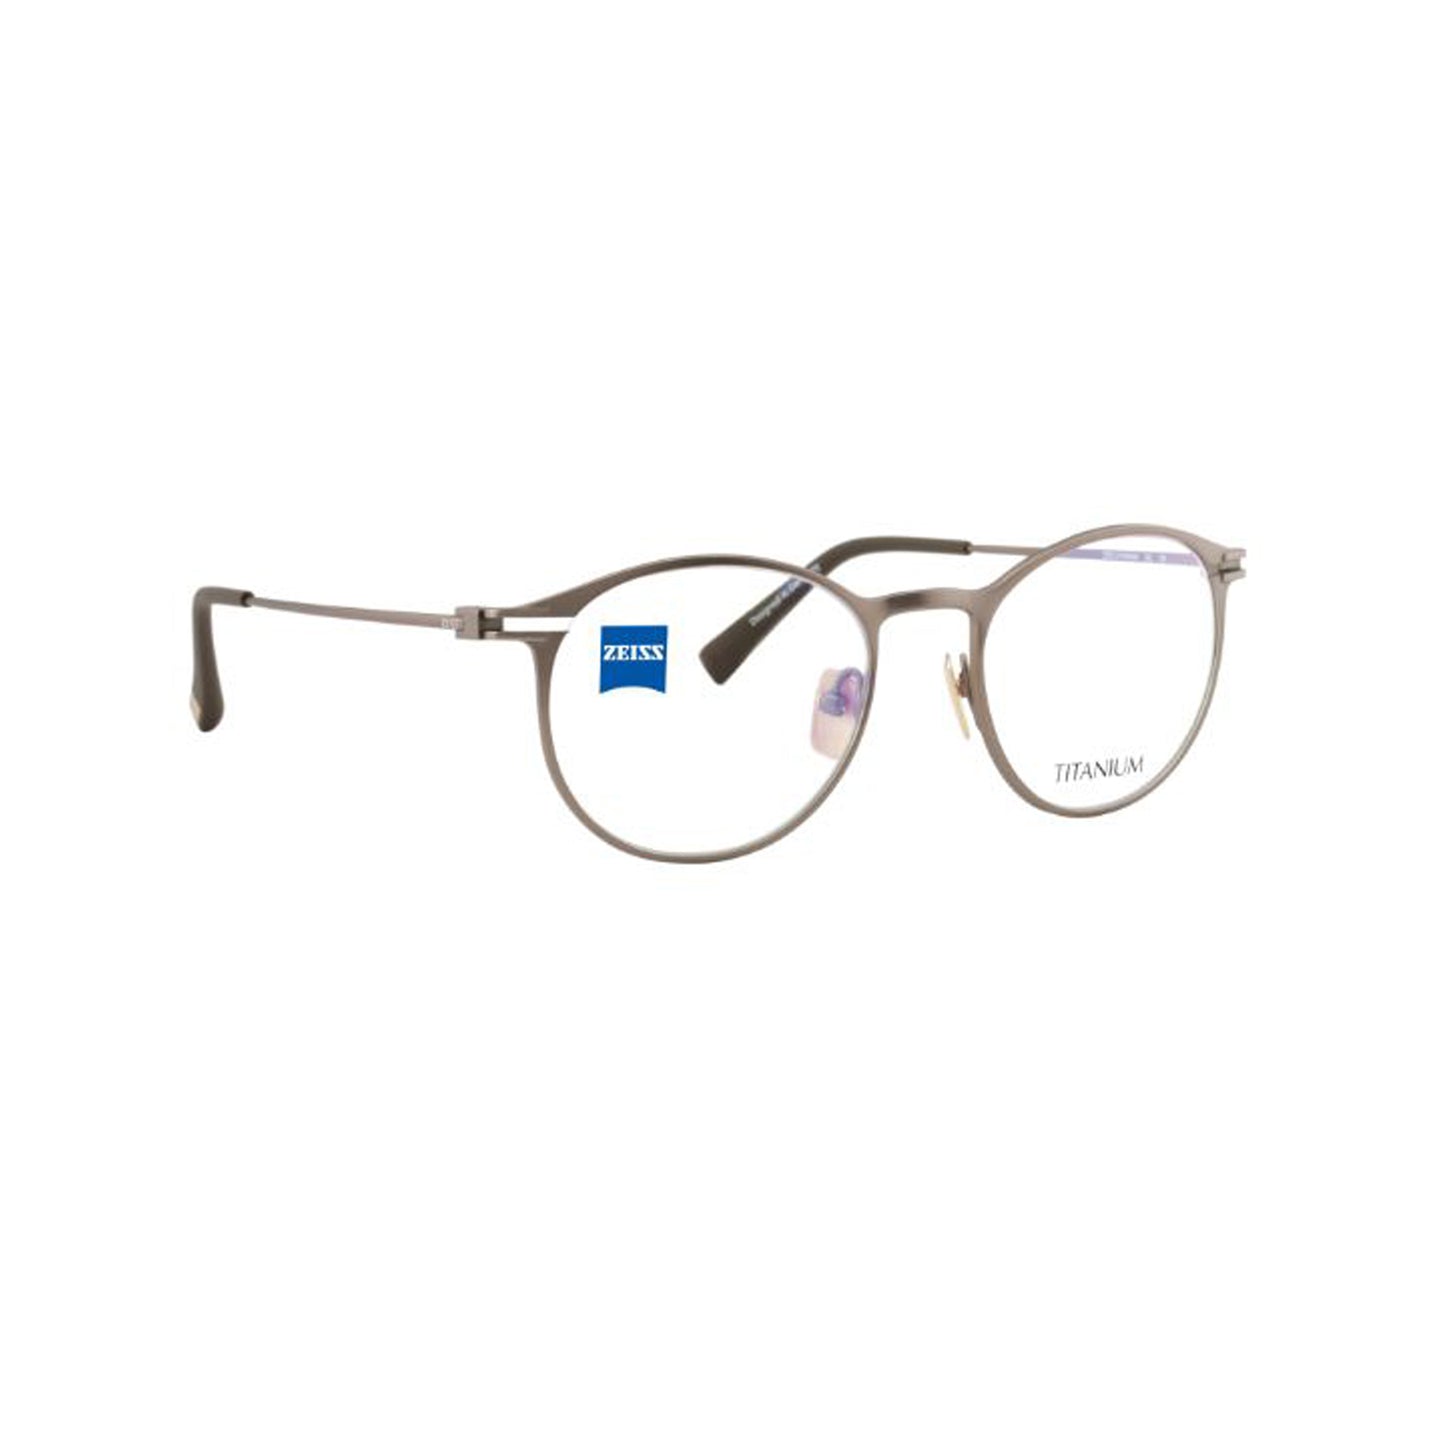 Zeiss Eyewear Brown Round Metal Full Rim Eyeglasses. Made in Germany ZS40021-Y22